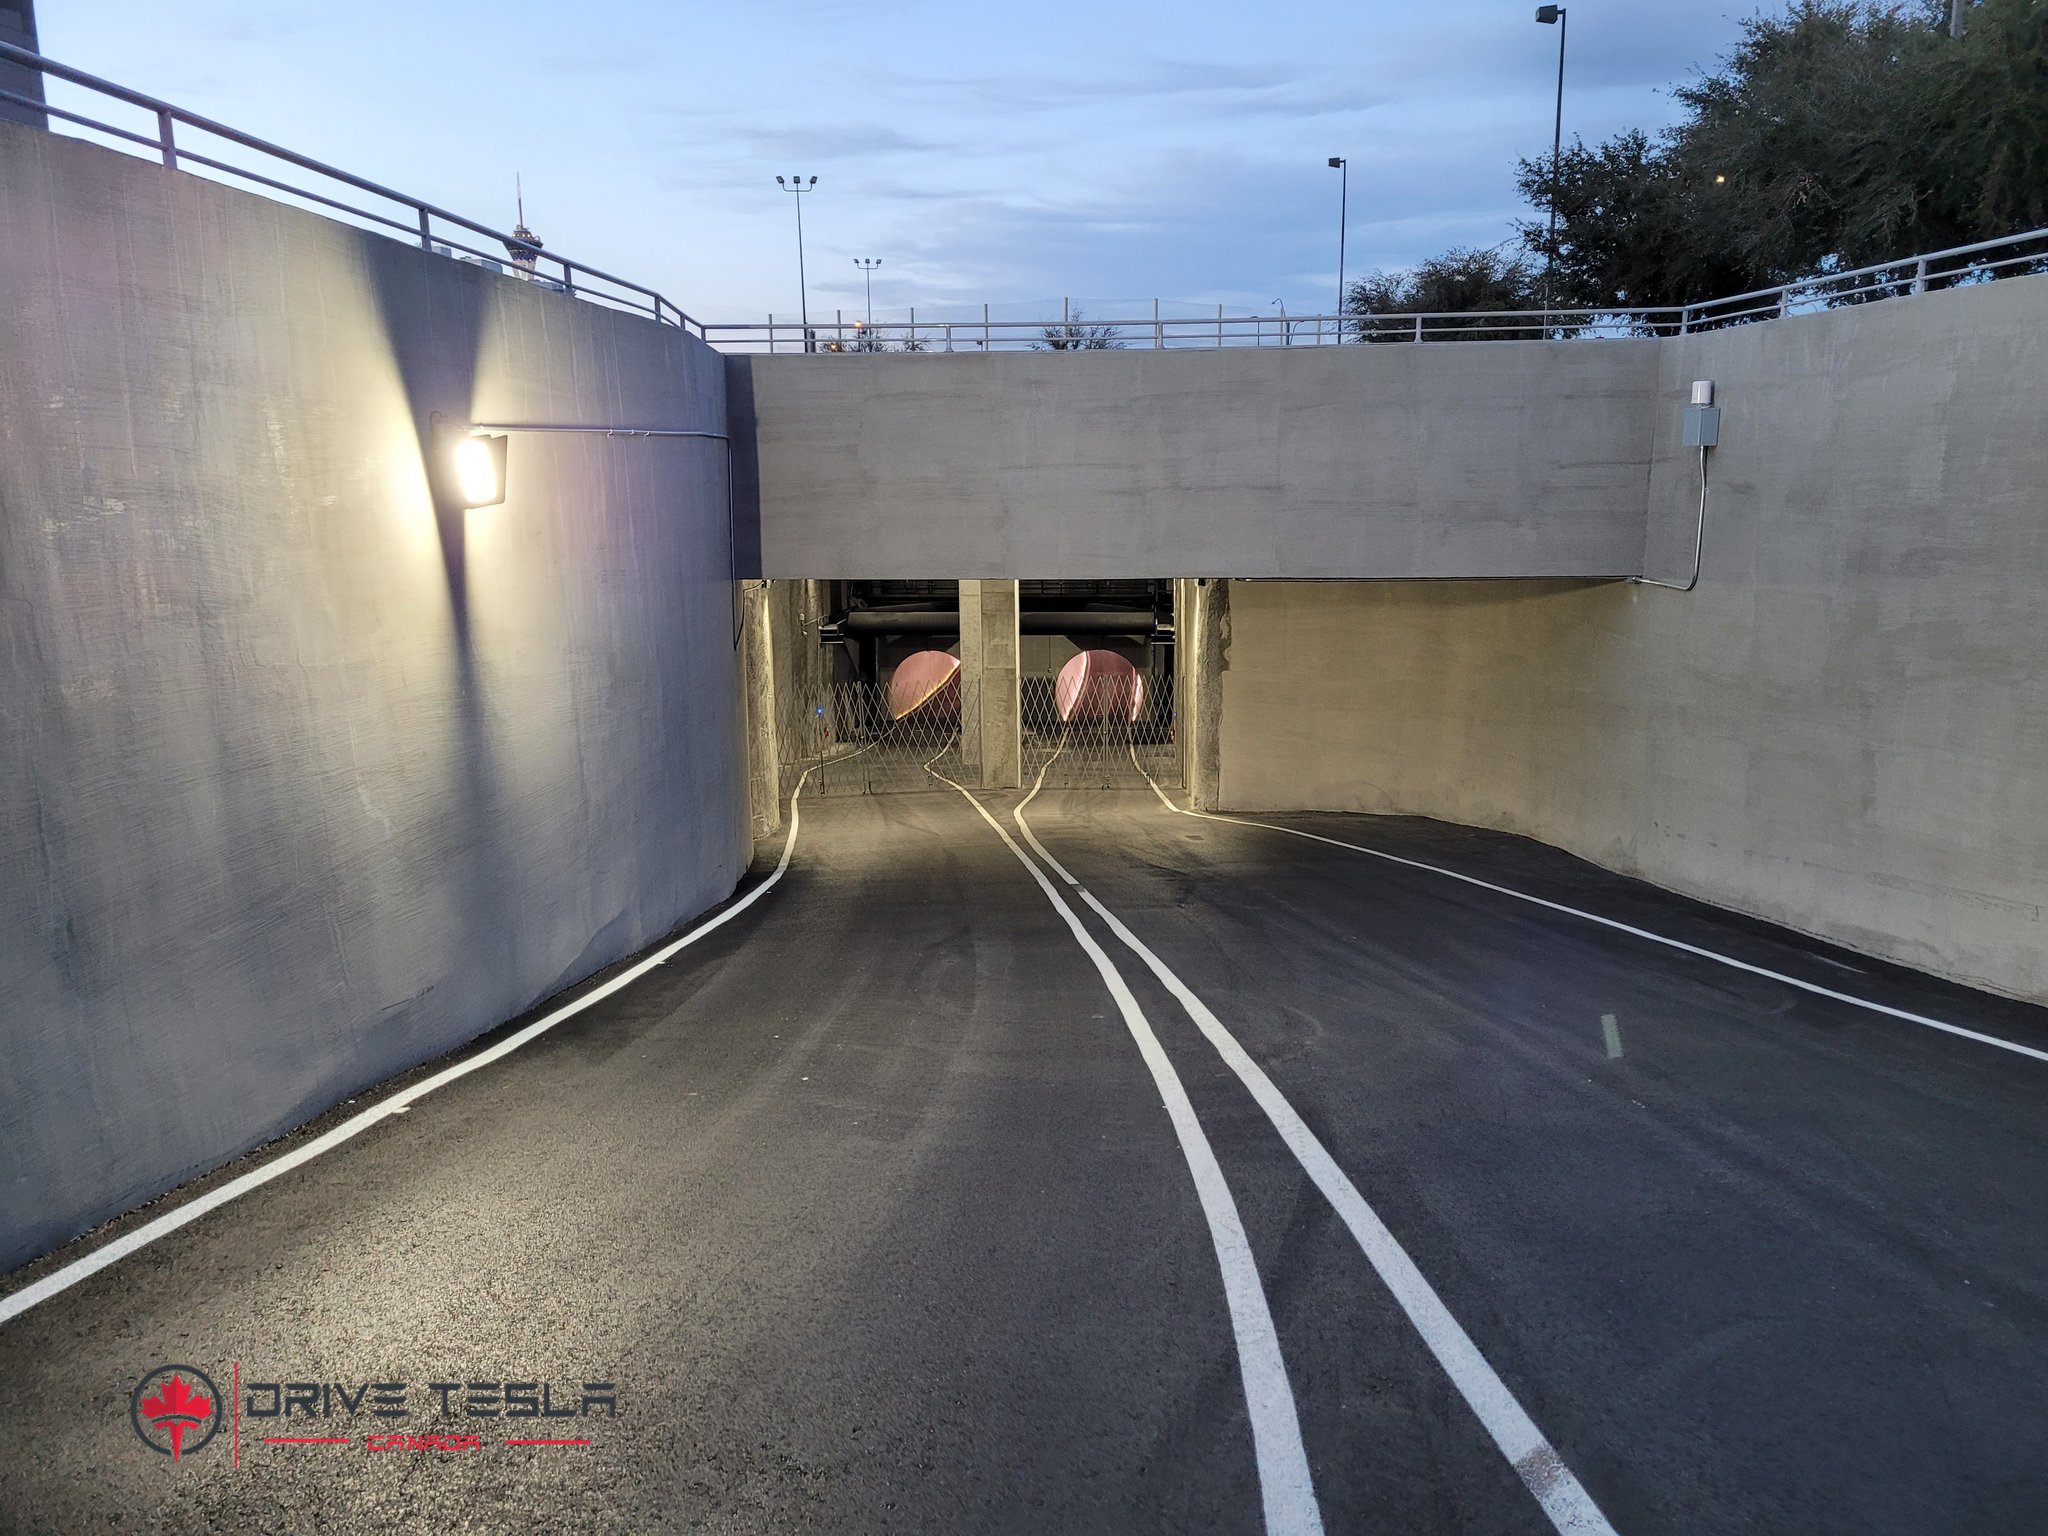 Las Vegas Boring Tunnel